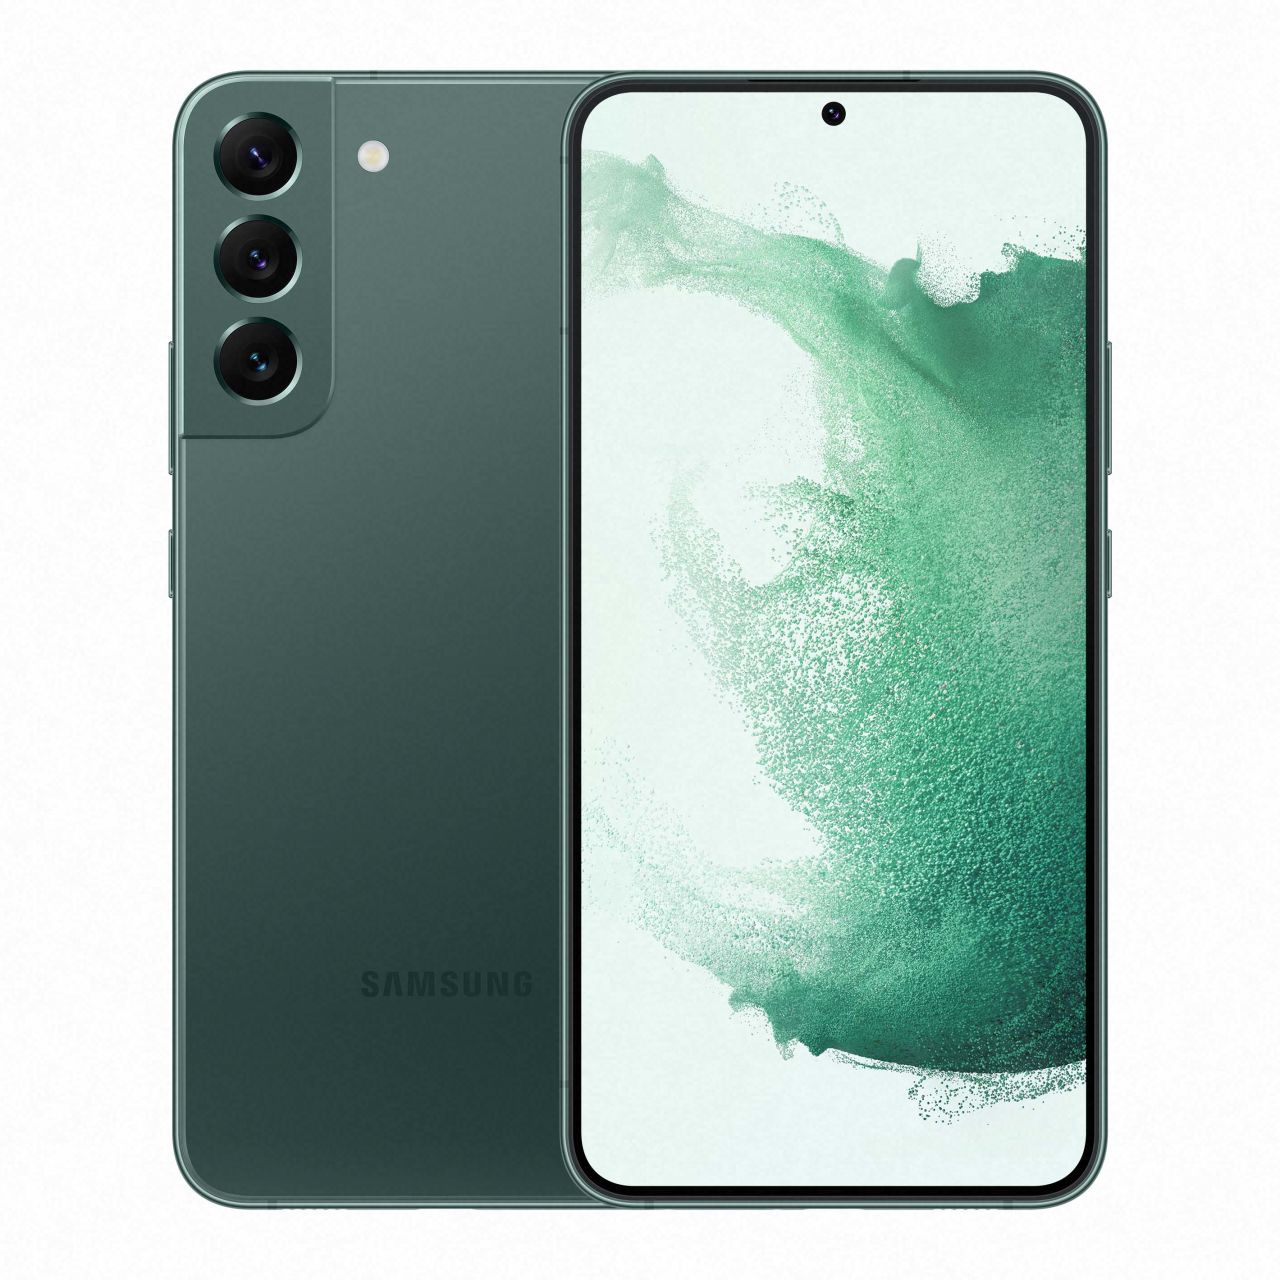 Samsung Galaxy S22 Ultra